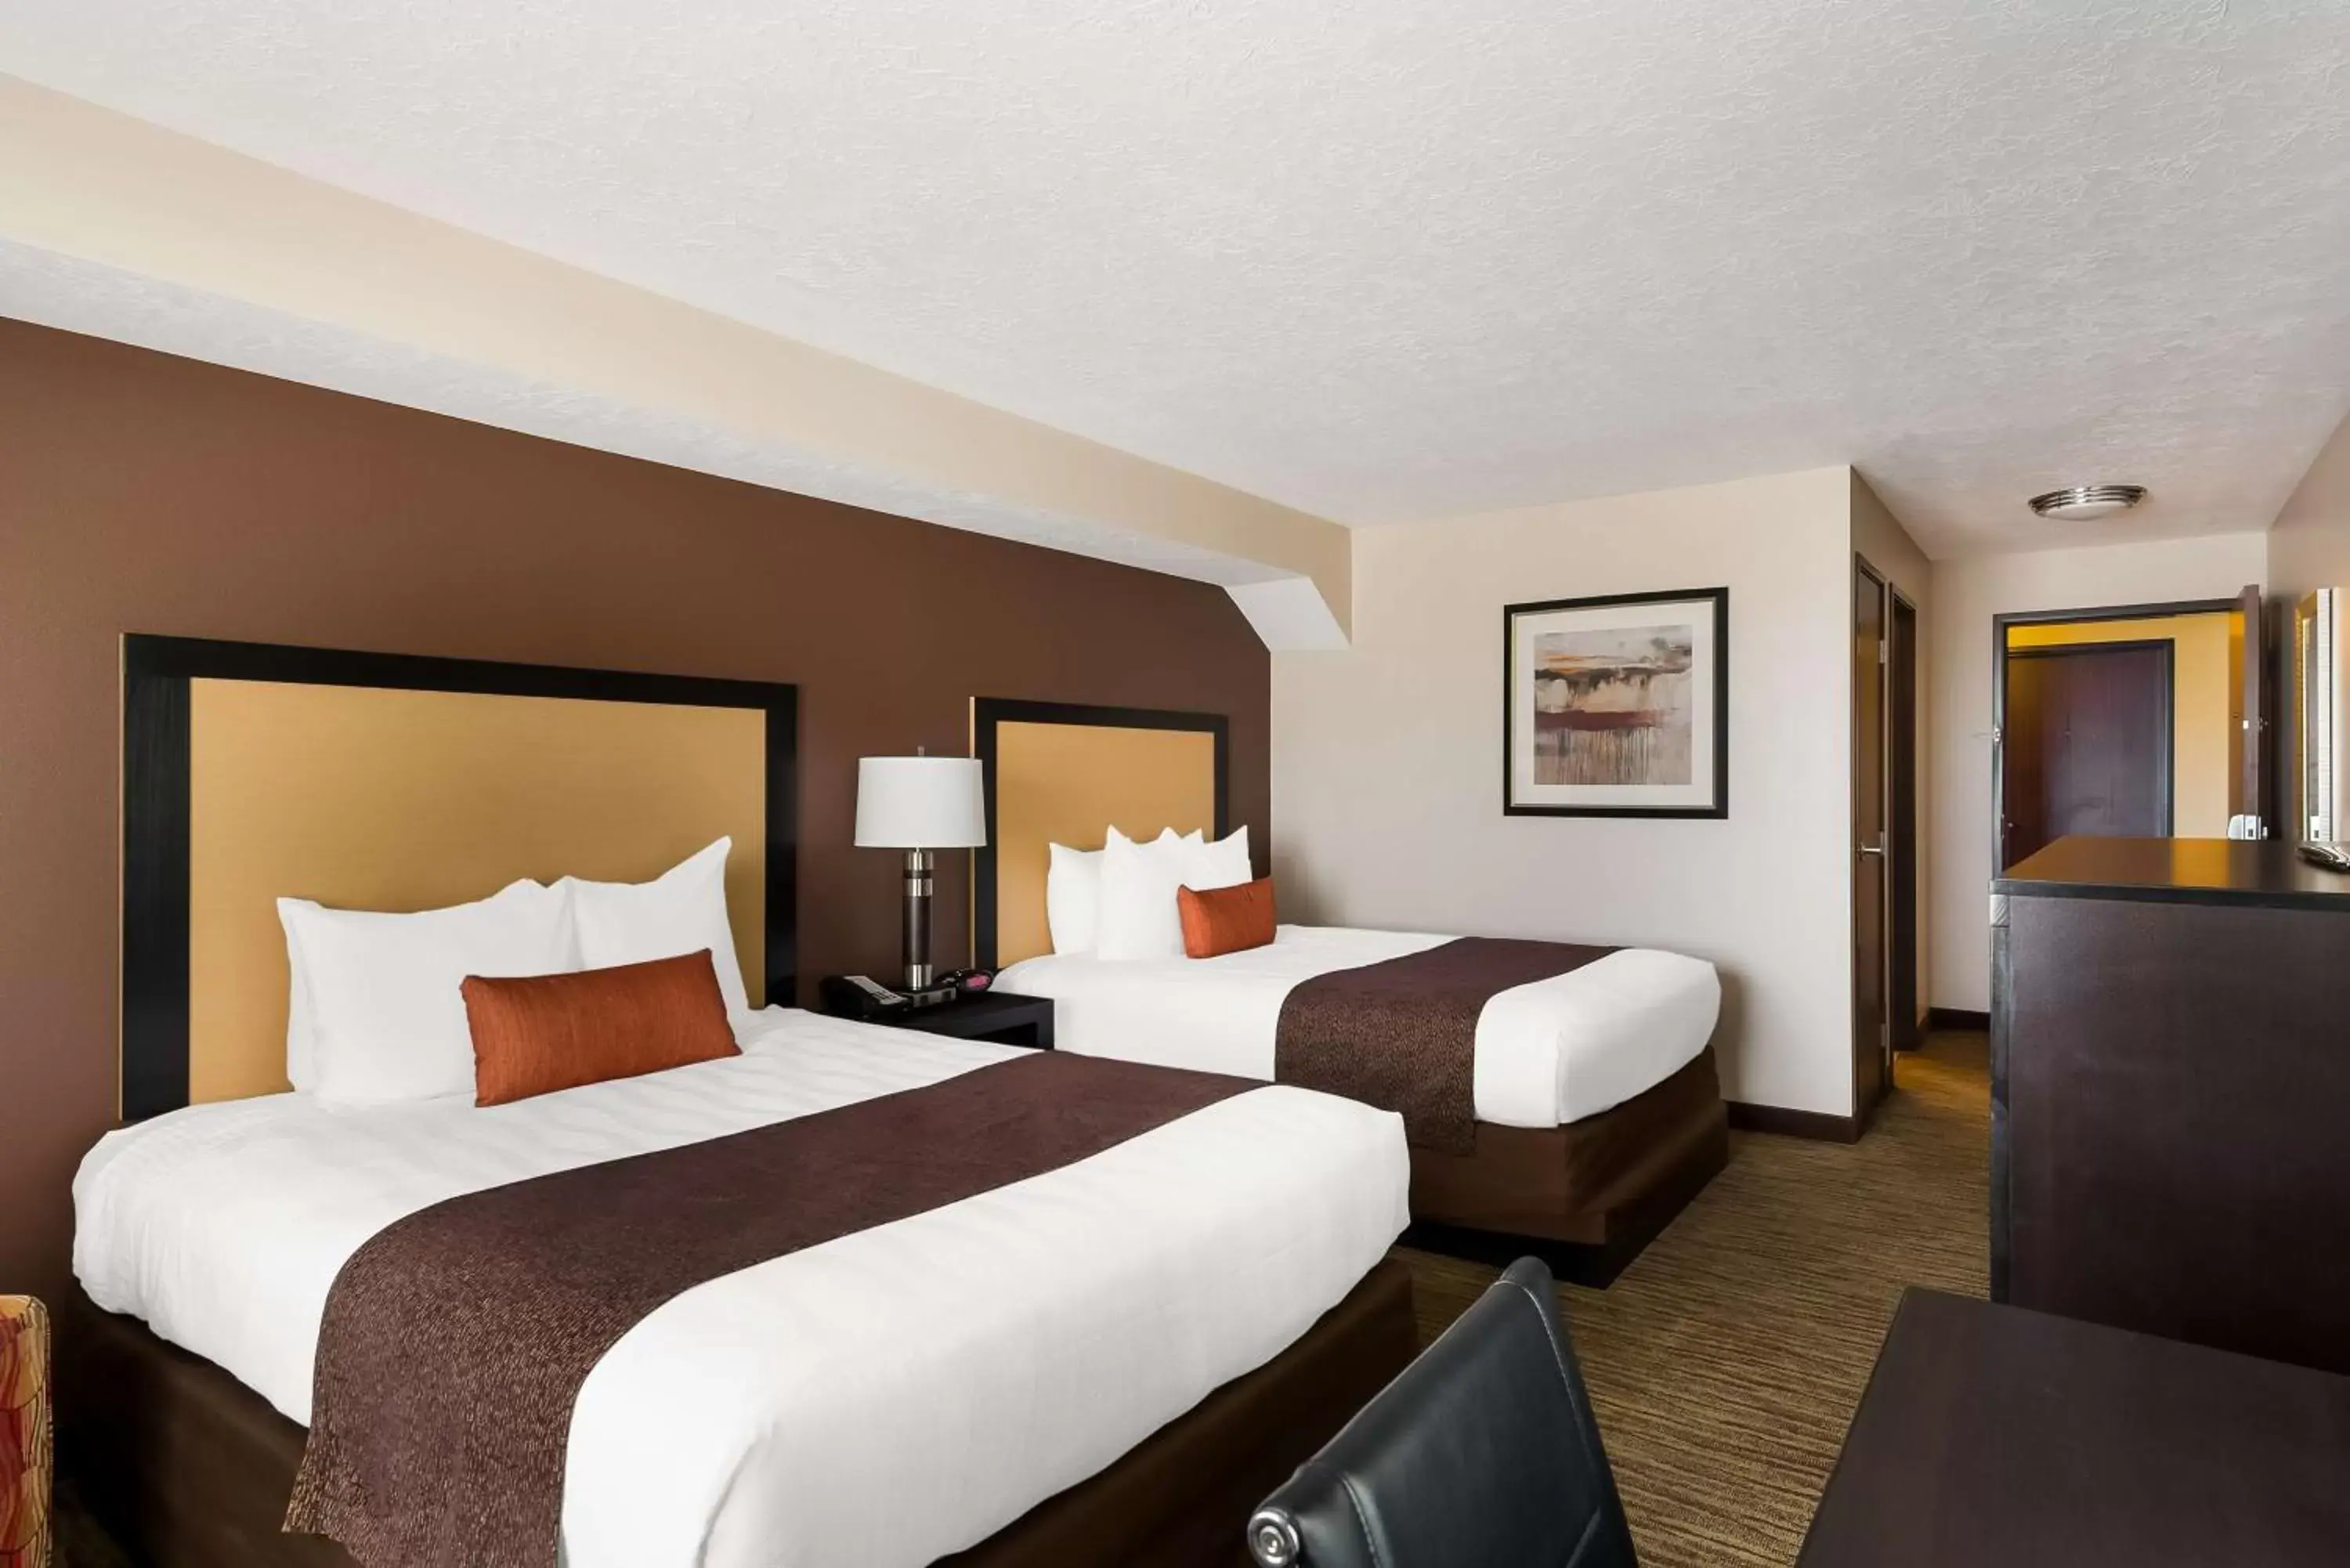 Bedroom, Bed in Best Western Plus Landmark Hotel